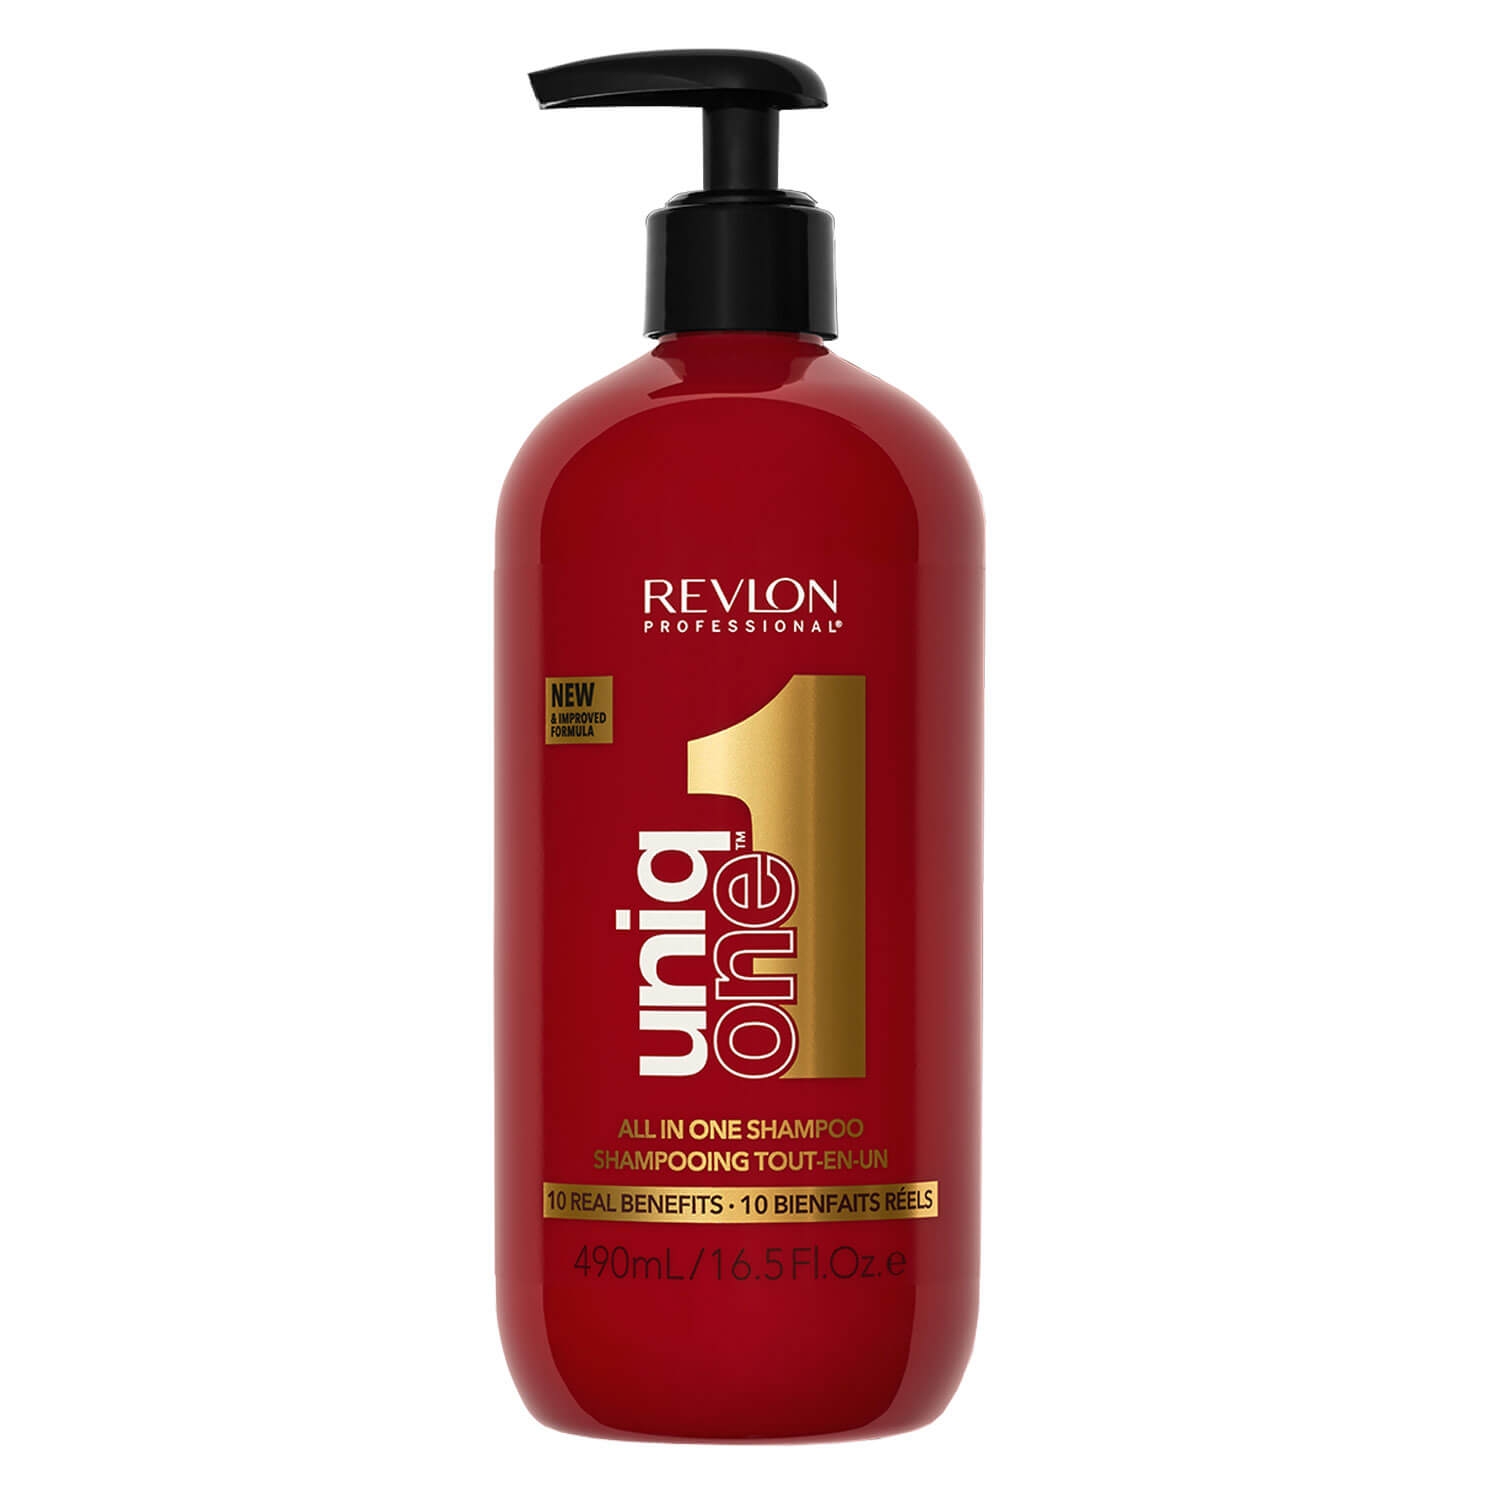 Produktbild von uniq one - All in One Shampoo